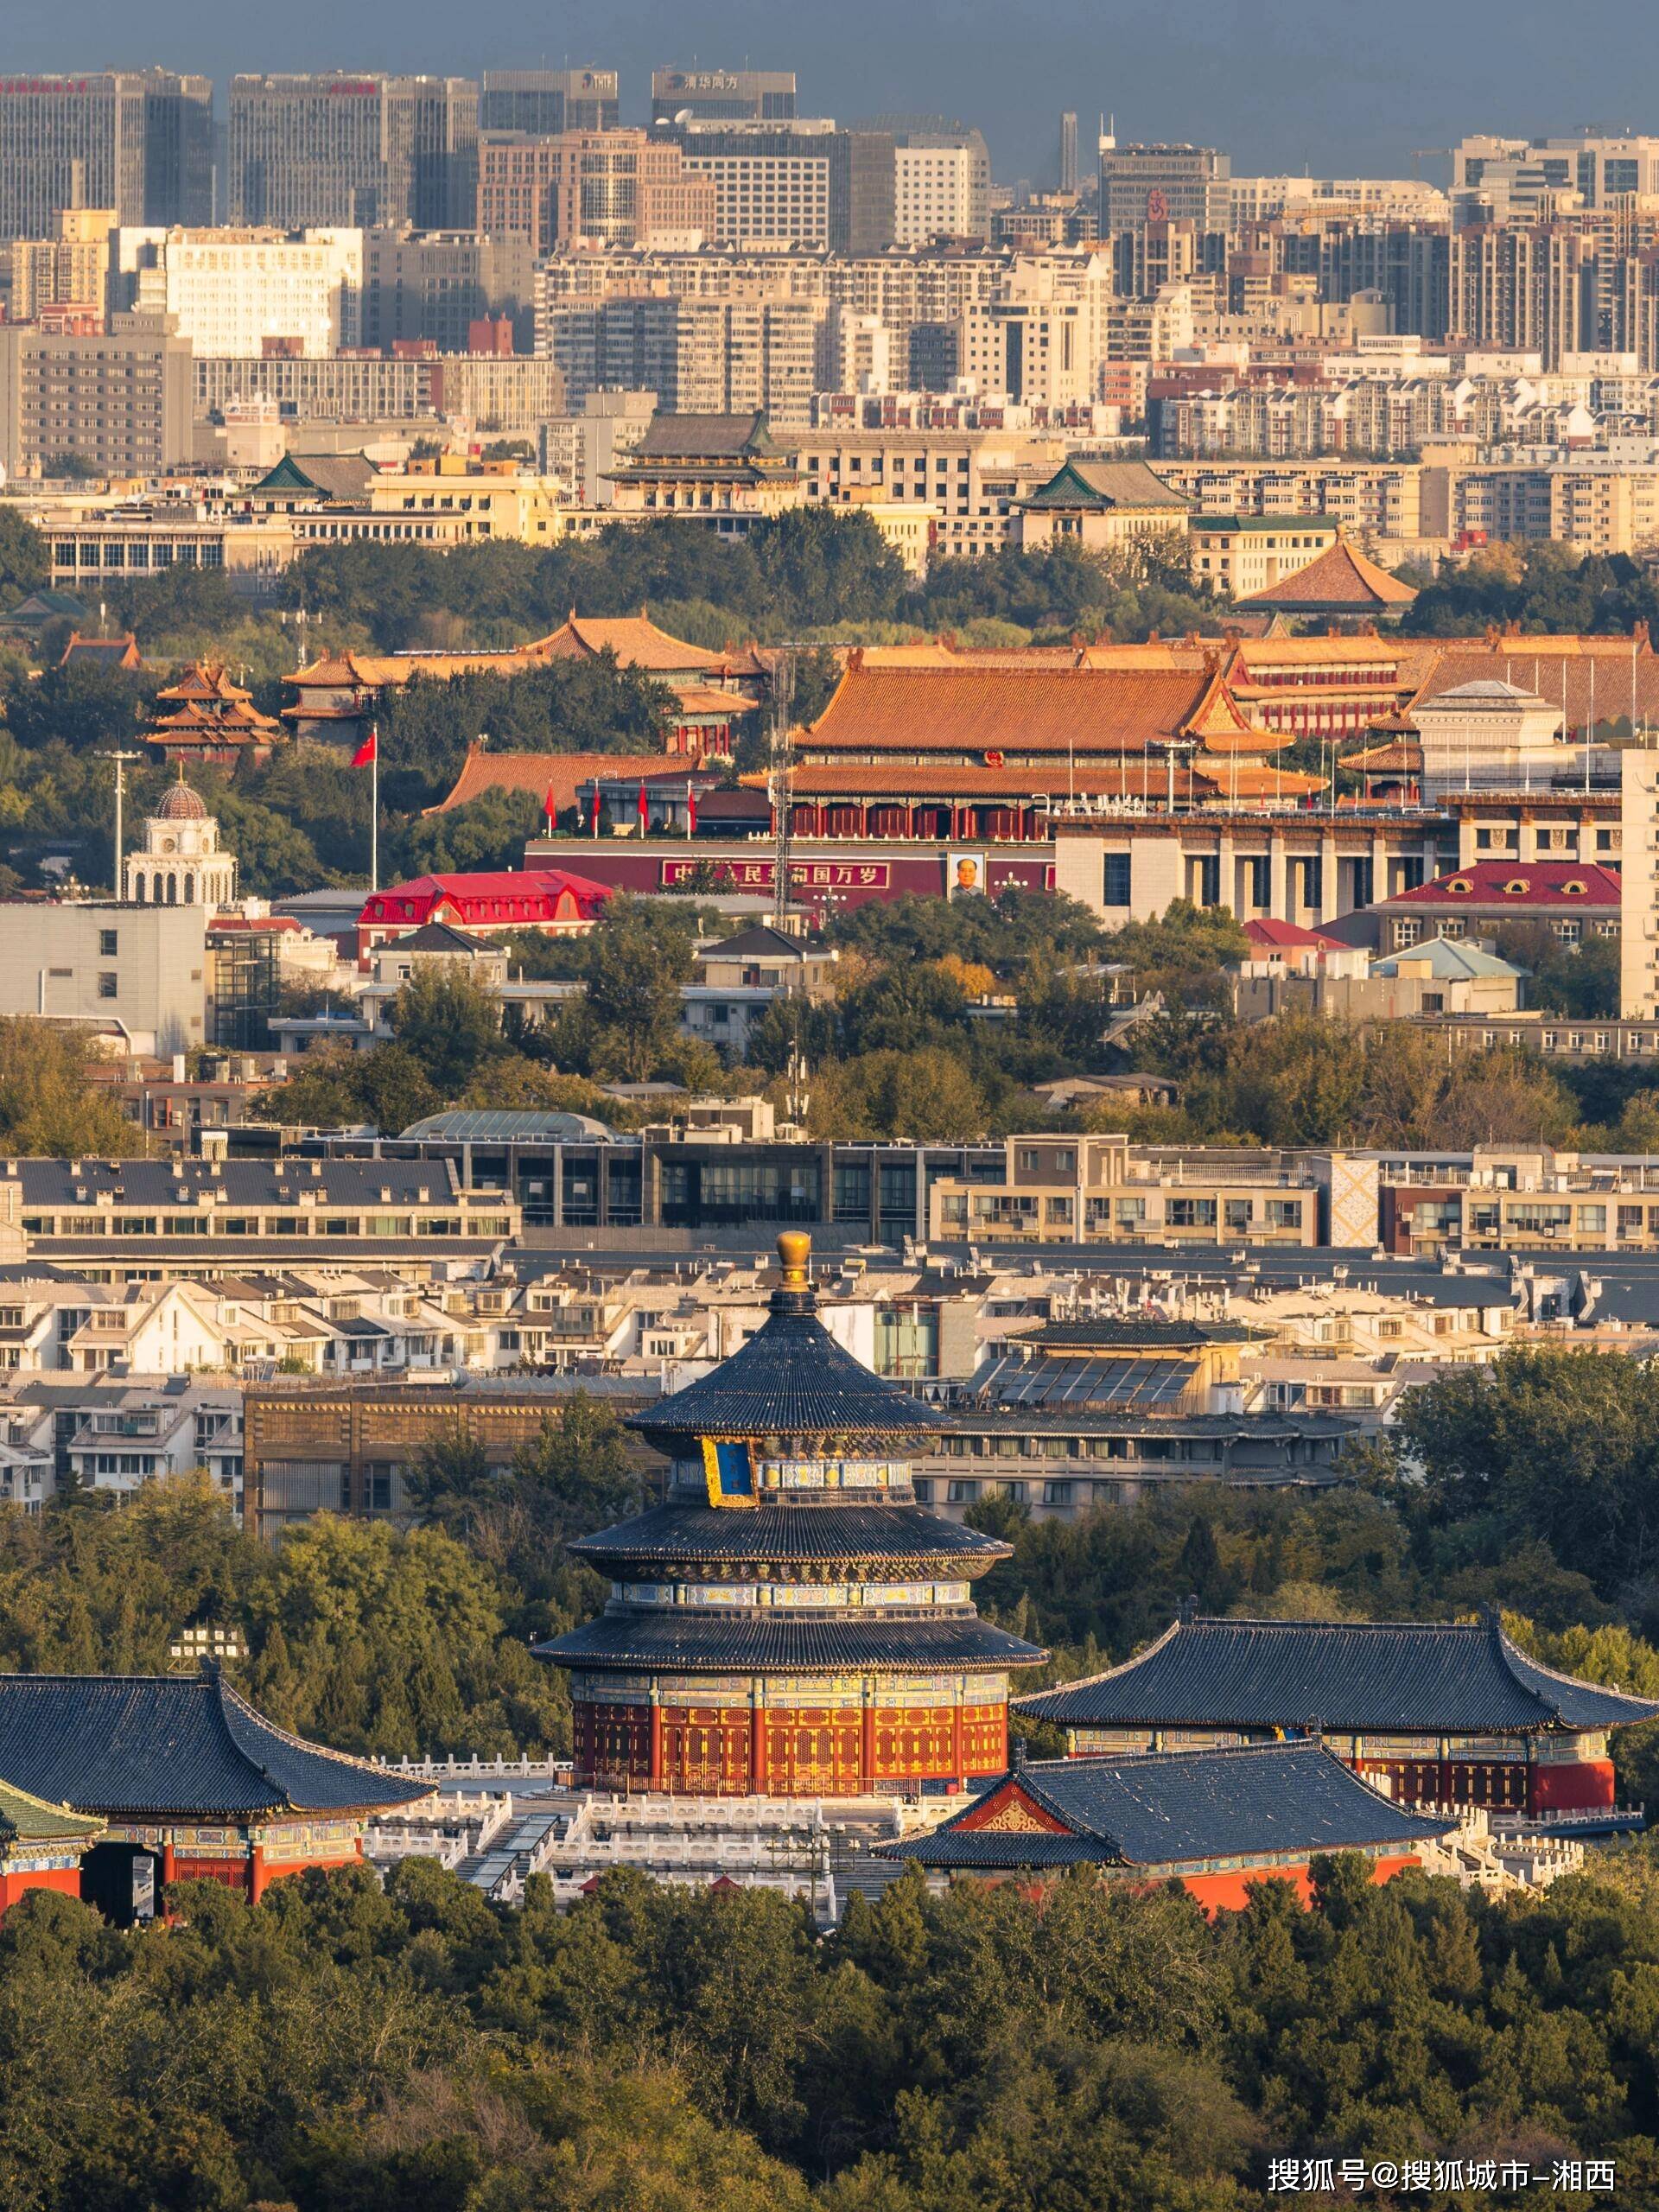 北京旅游带小孩攻略,北京著名景点有哪些?保姆级指南